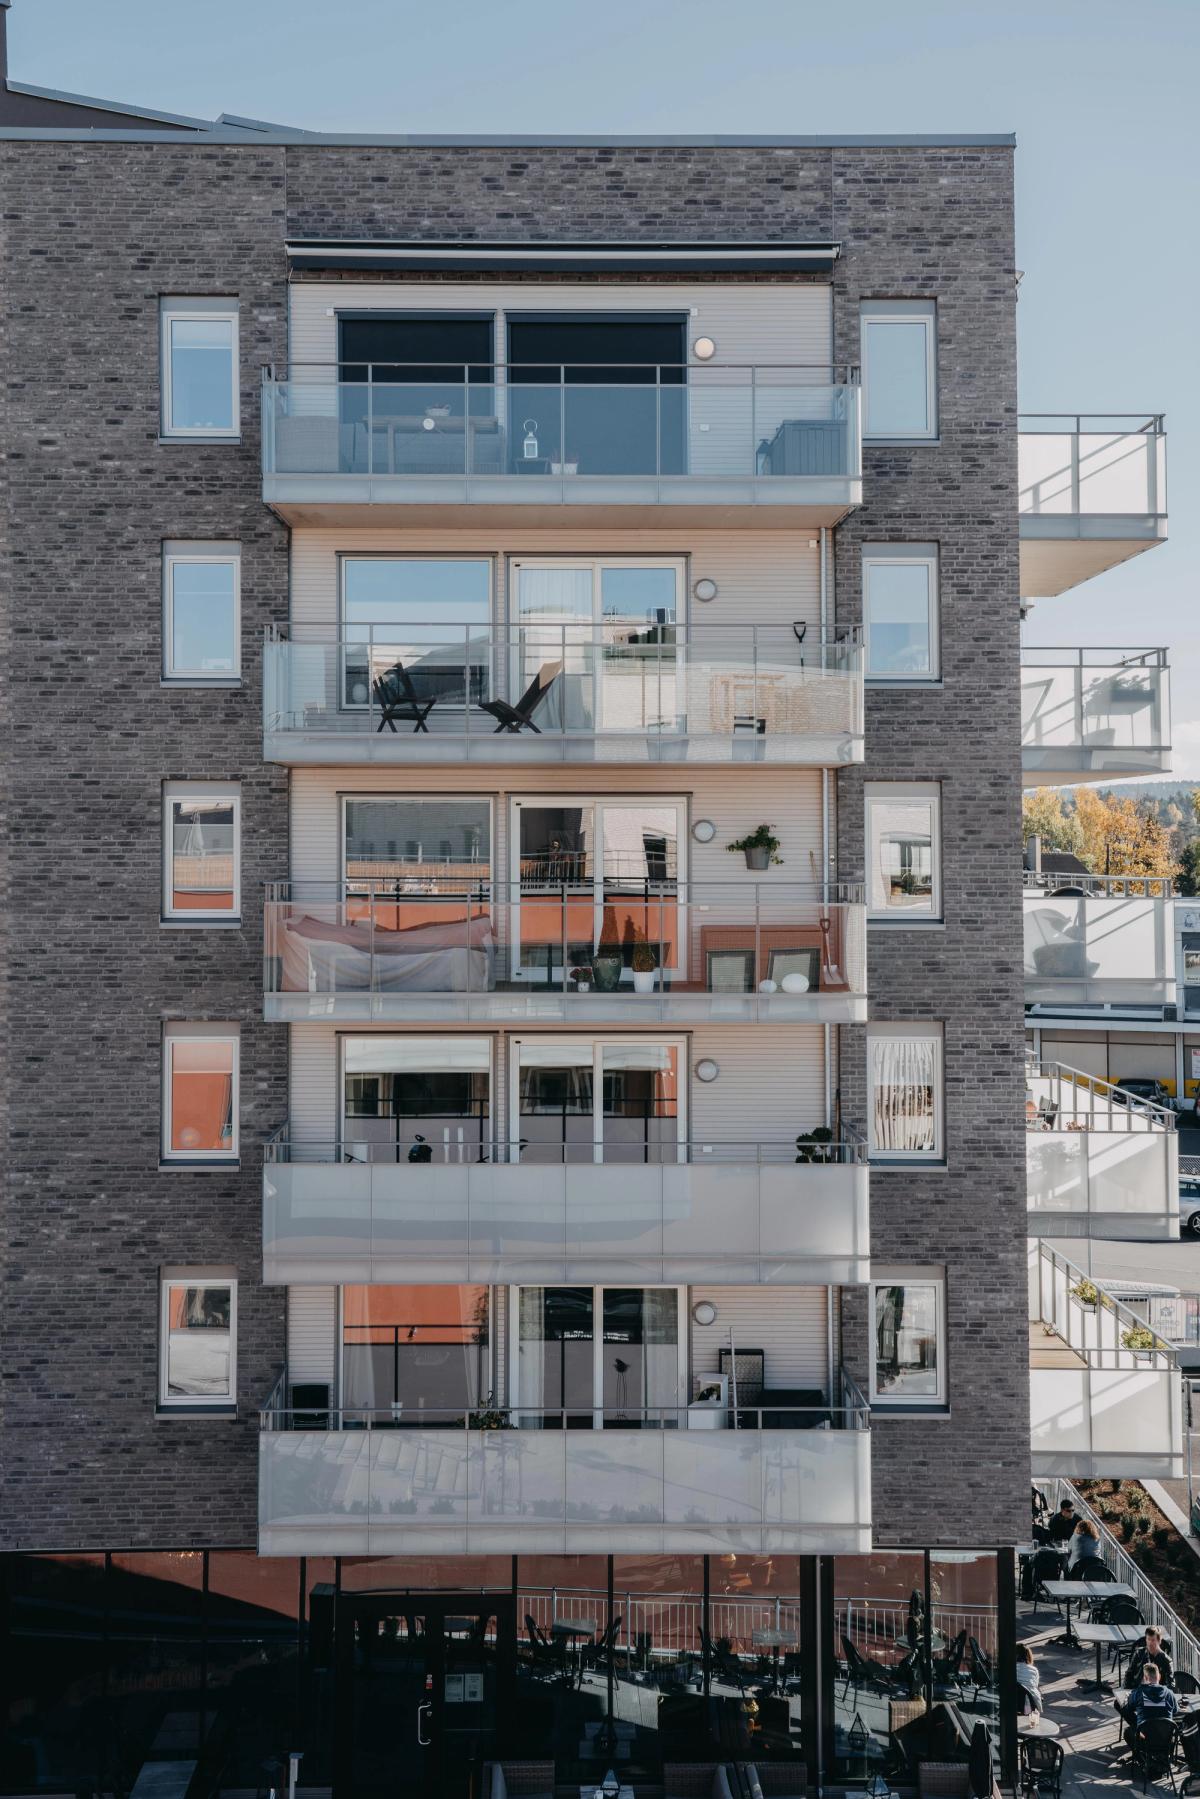 Fasadefoto av balkonger og livet som oppstår i balkongene etter innflytting.